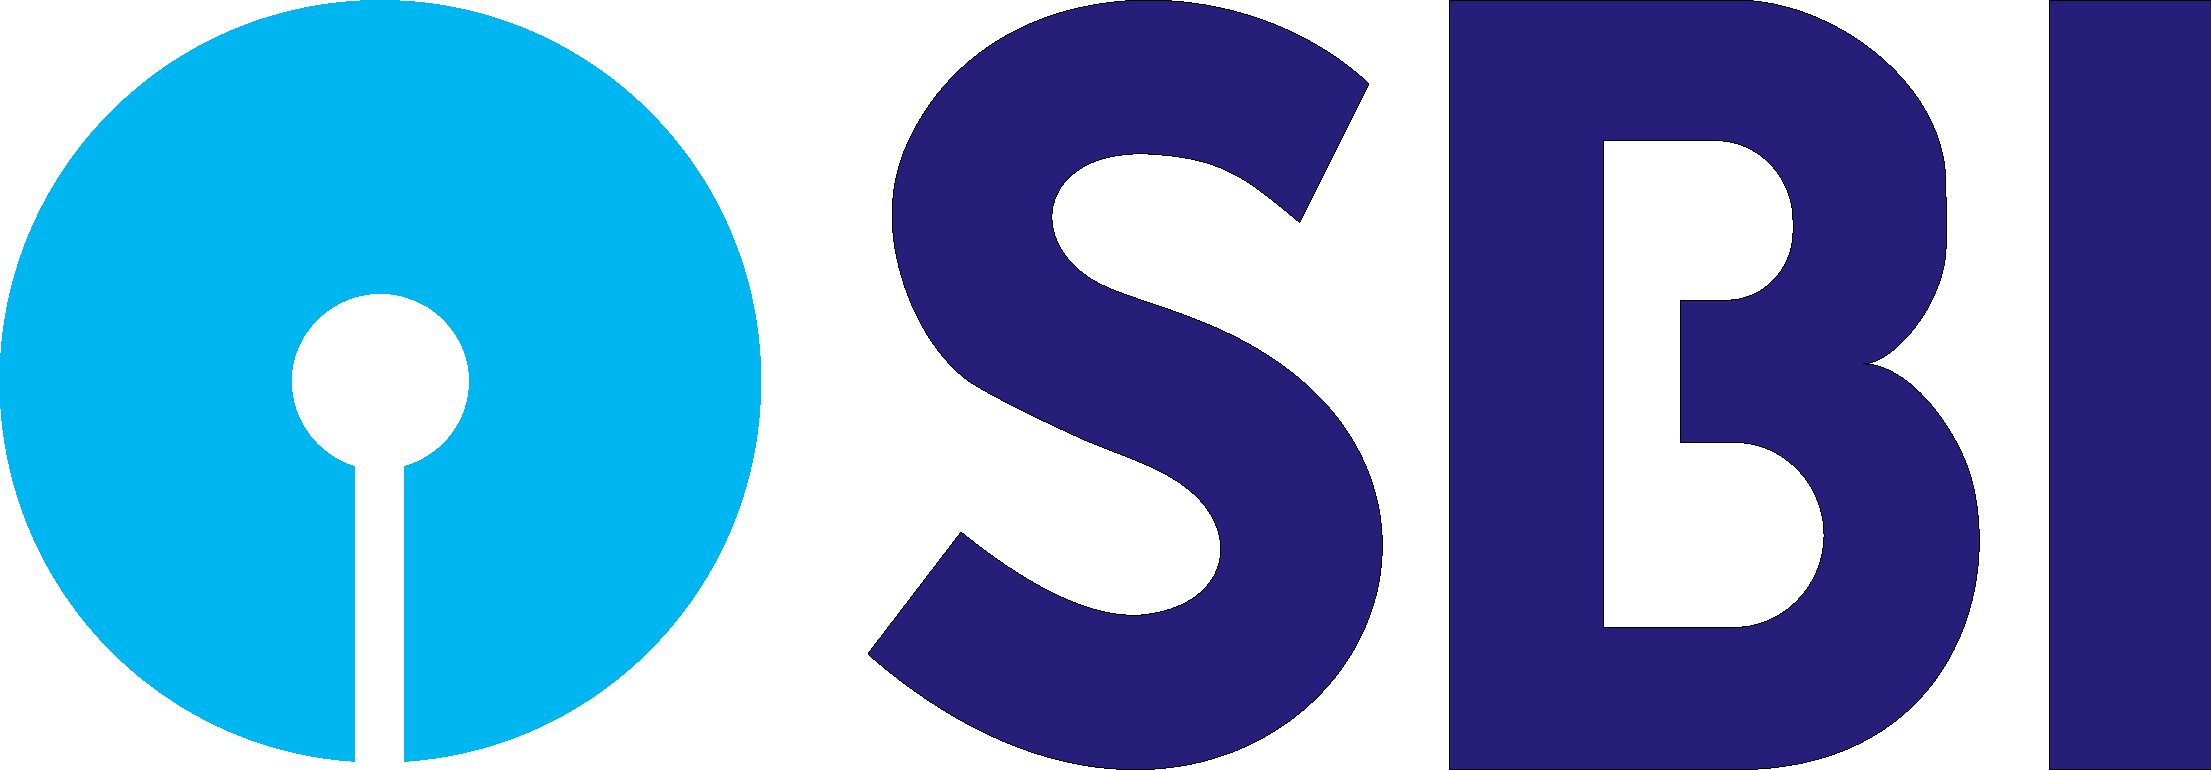 SBI Group Brand Logo